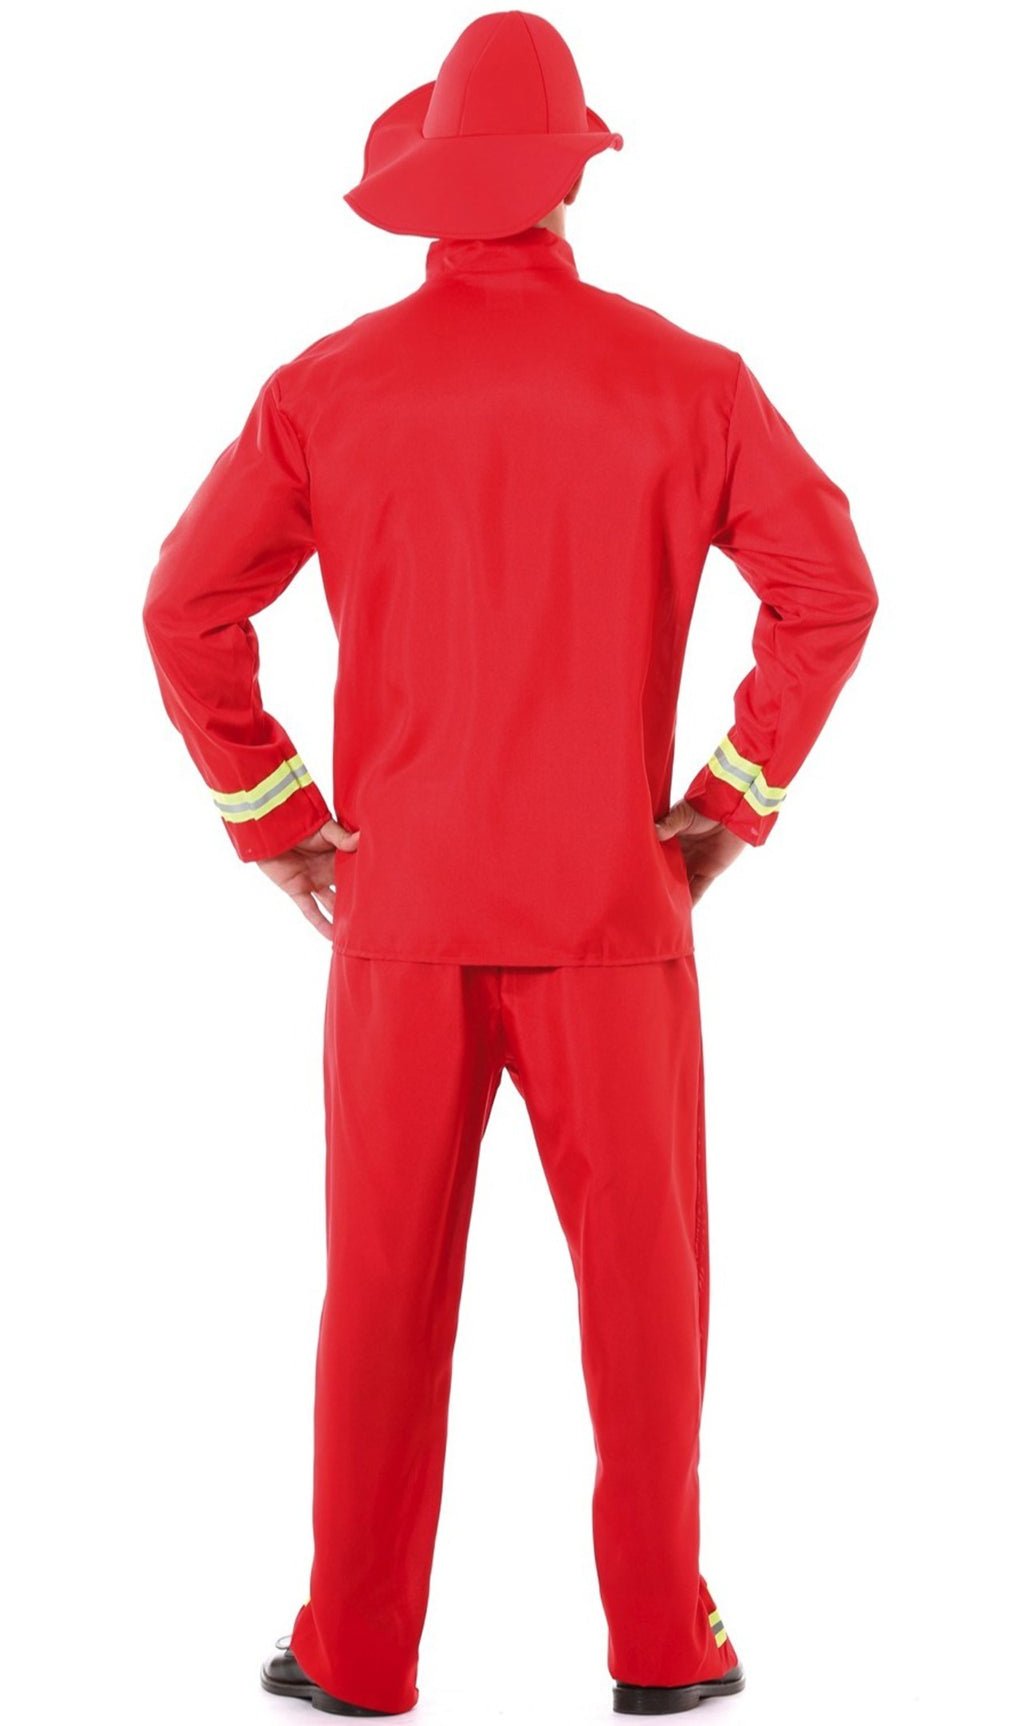 Comprar online Disfraz de Bombero Rojo para hombre